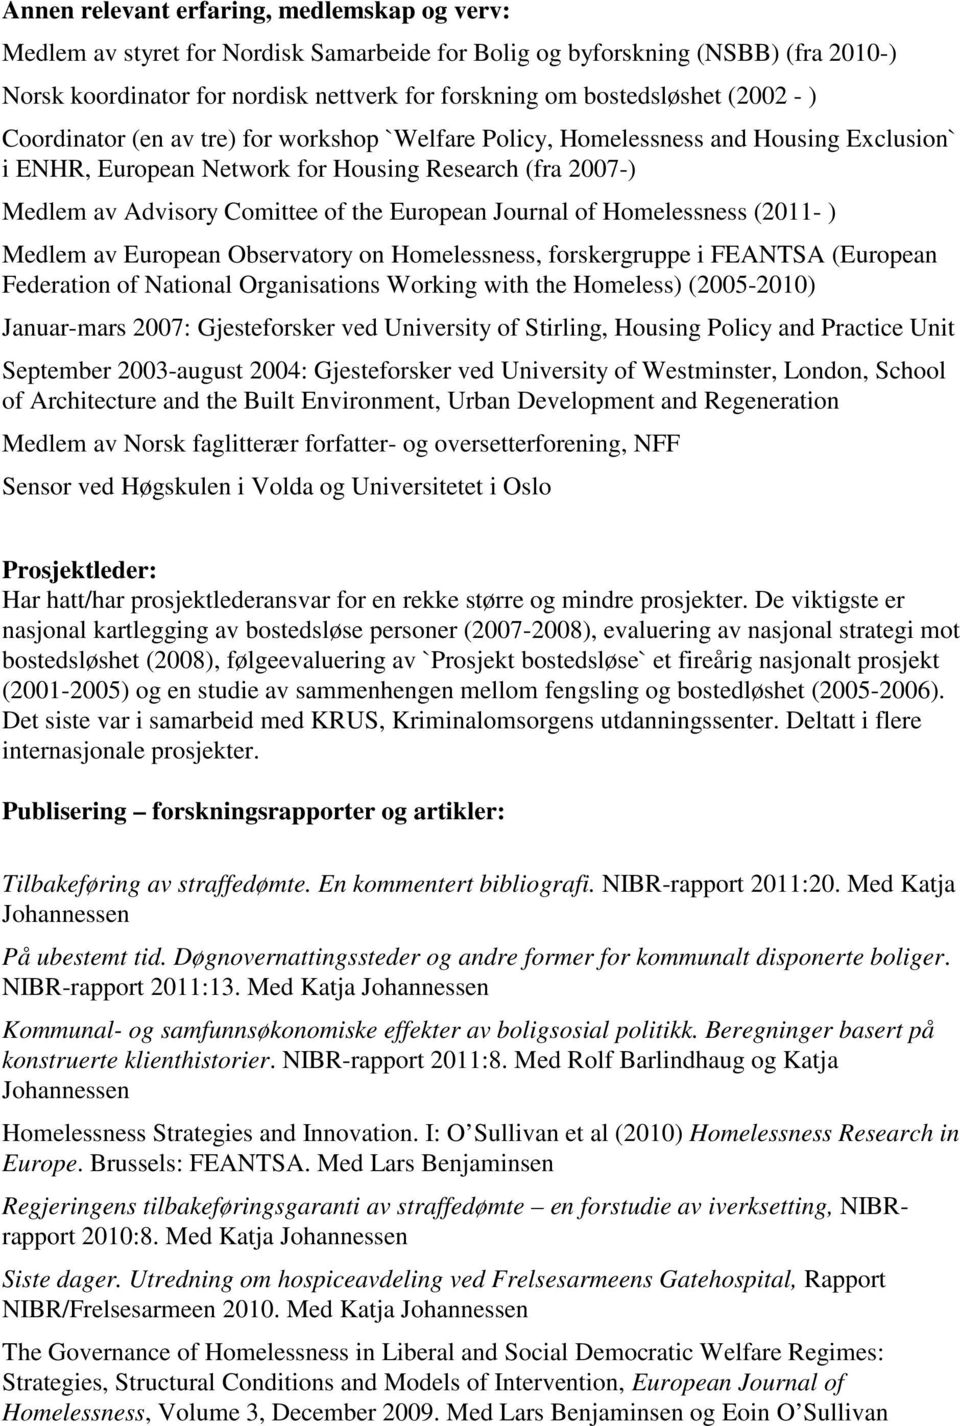 European Journal of Homelessness (2011- ) Medlem av European Observatory on Homelessness, forskergruppe i FEANTSA (European Federation of National Organisations Working with the Homeless) (2005-2010)